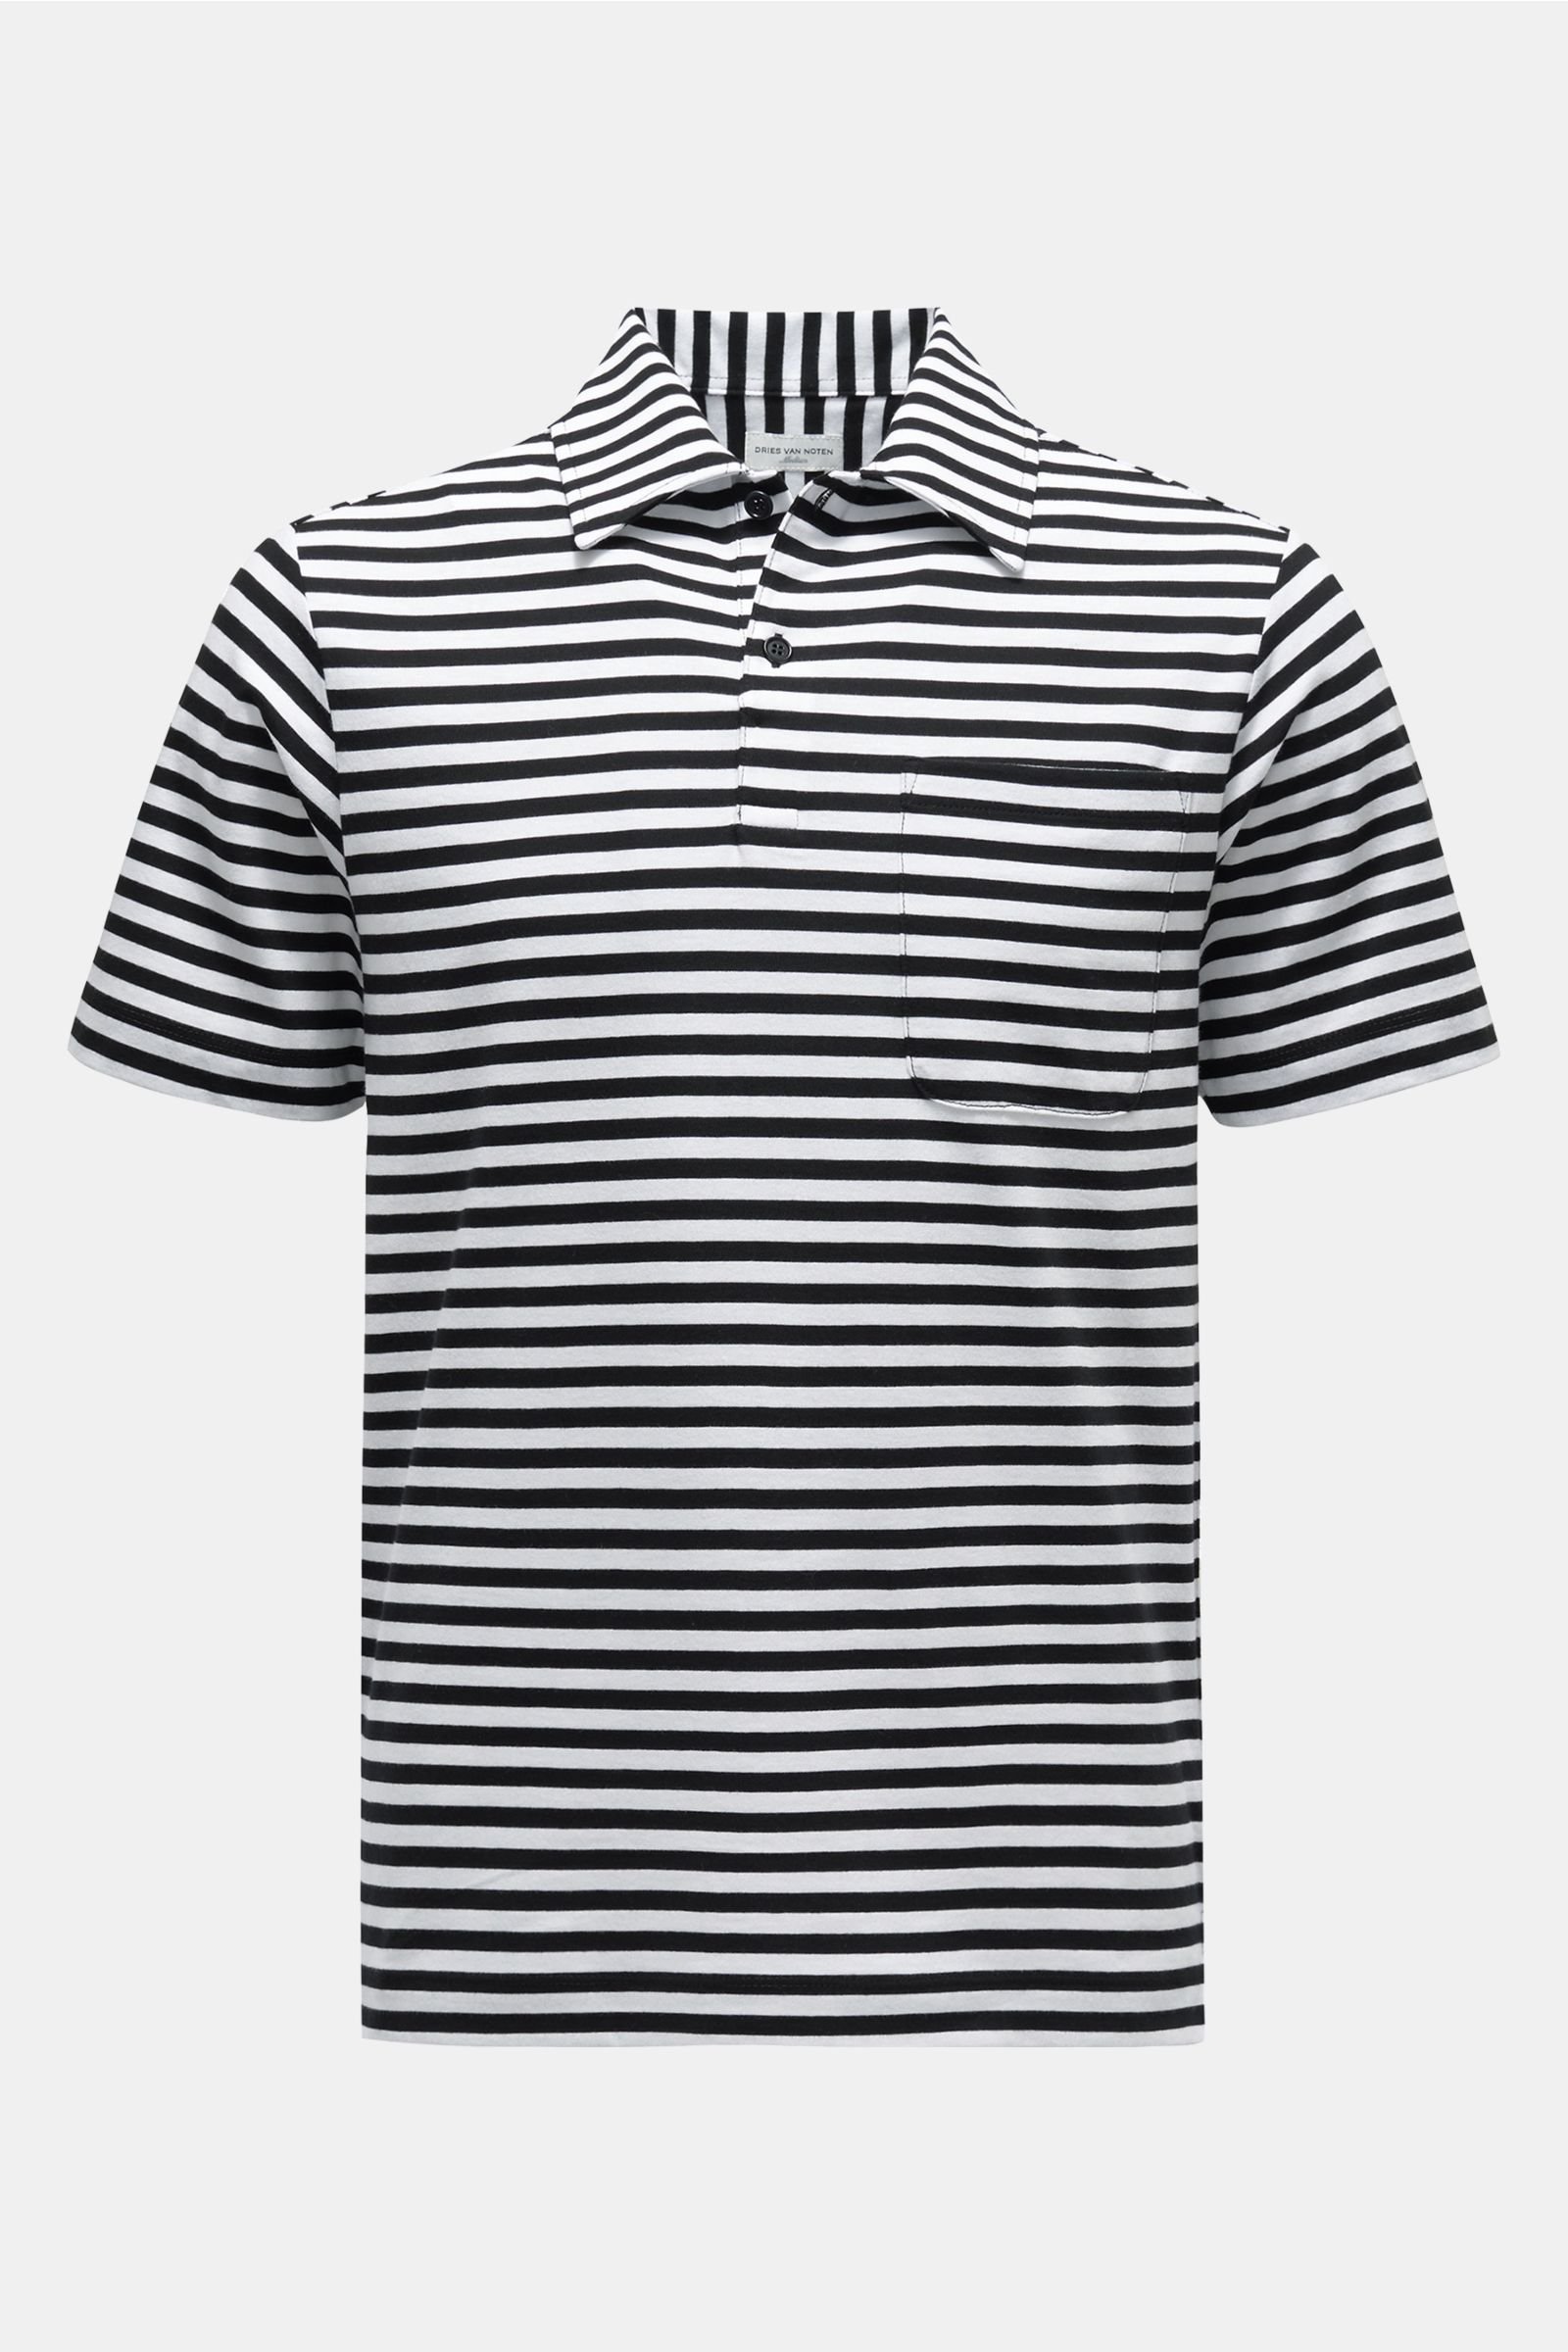 Jersey polo shirt black/white striped